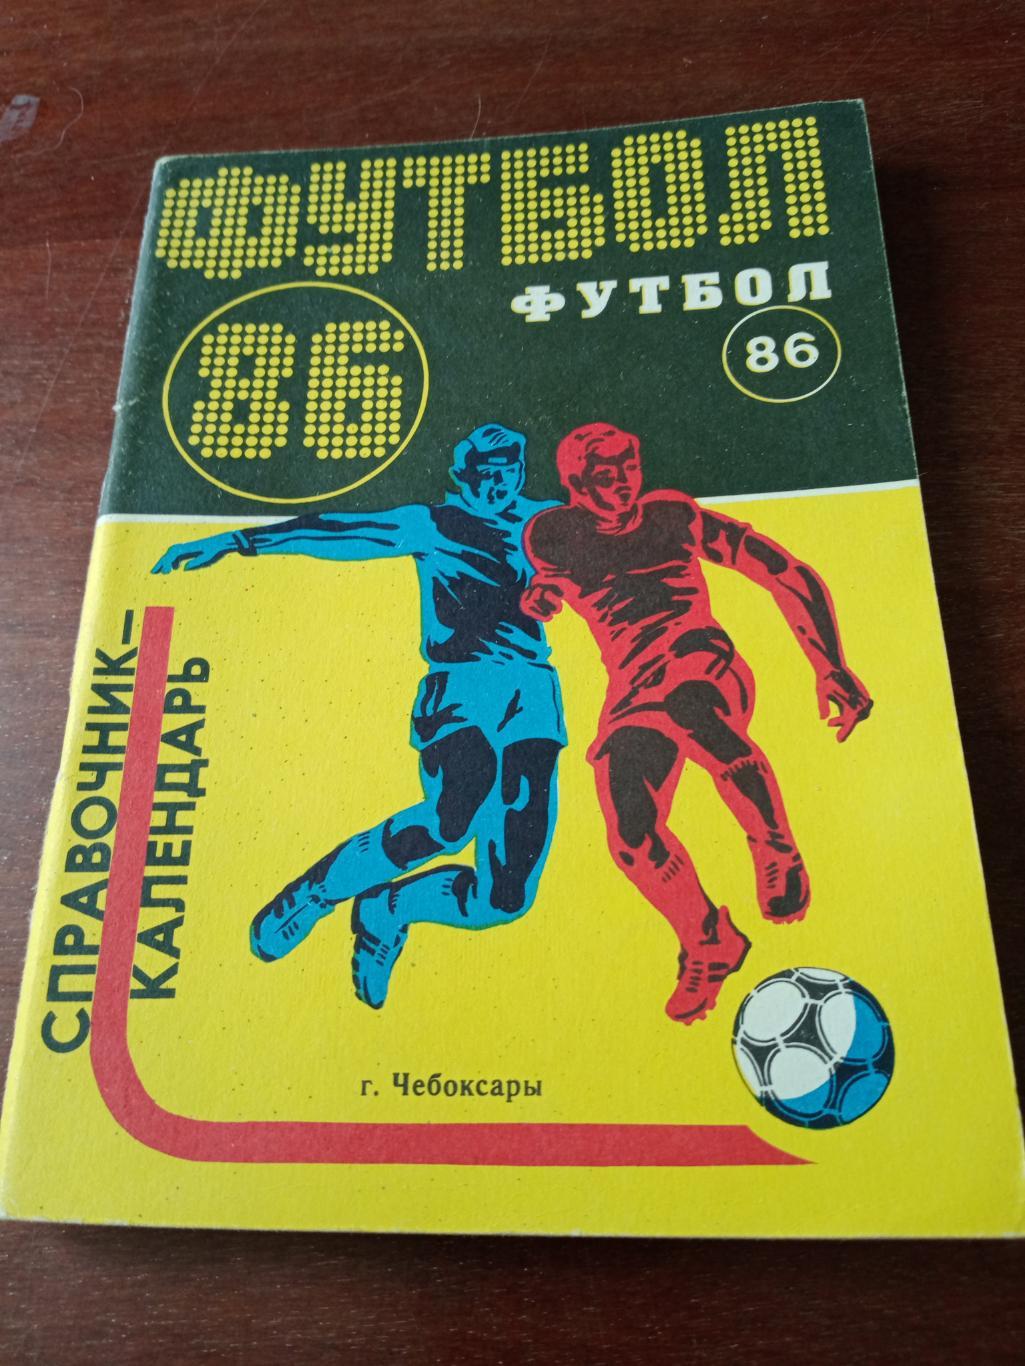 Футбол. Чебоксары. 1986 год